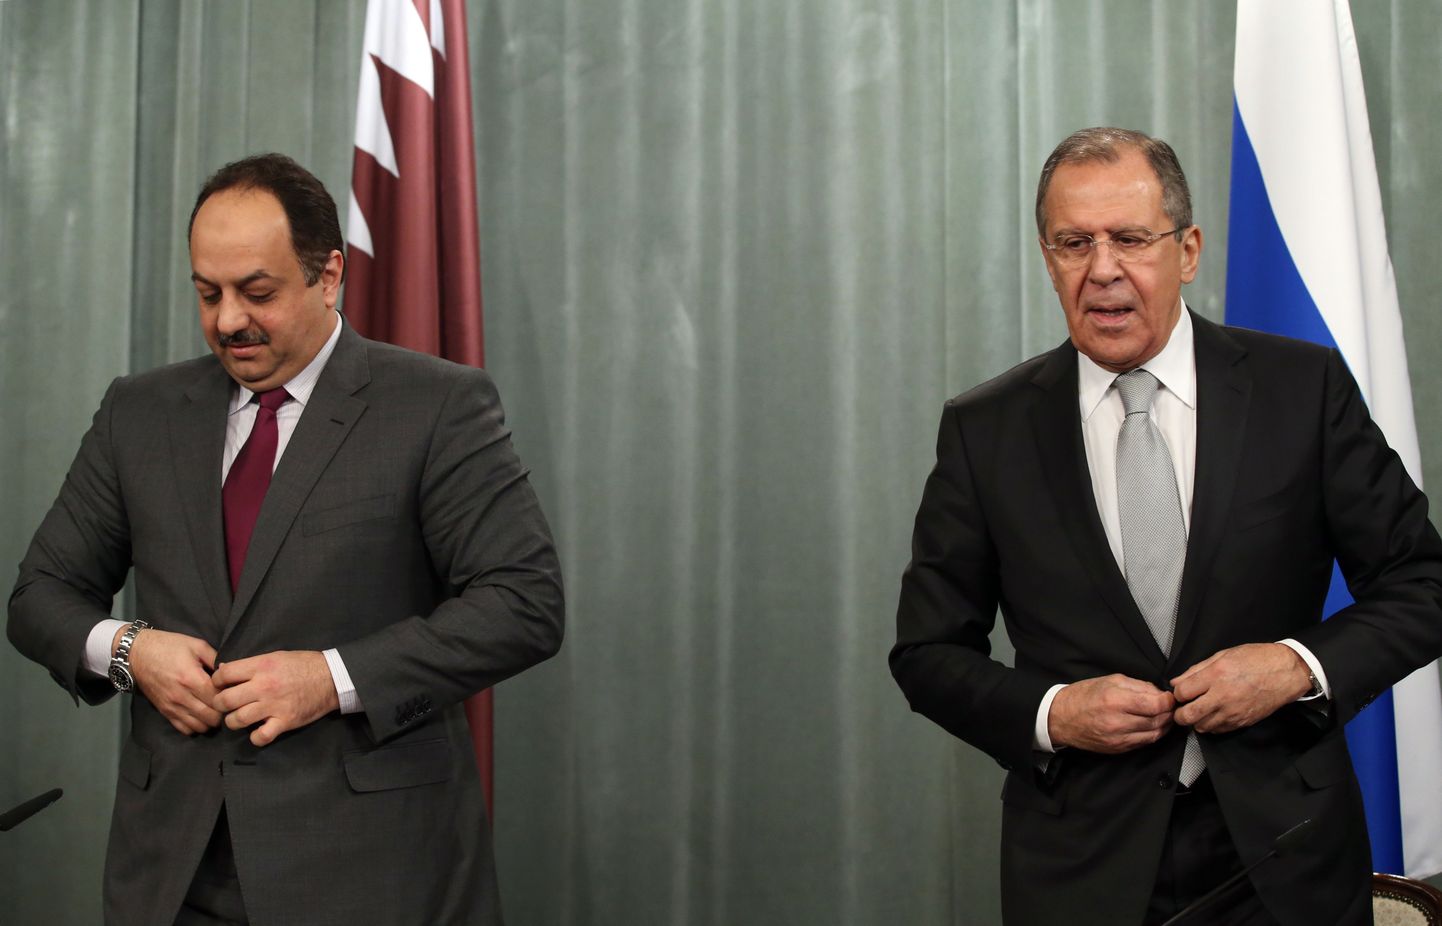 Глава российского МИД Сергей Лавров на встрече со своим катарским коллегой Халедом бен Мухаммедом аль-Атыйей.